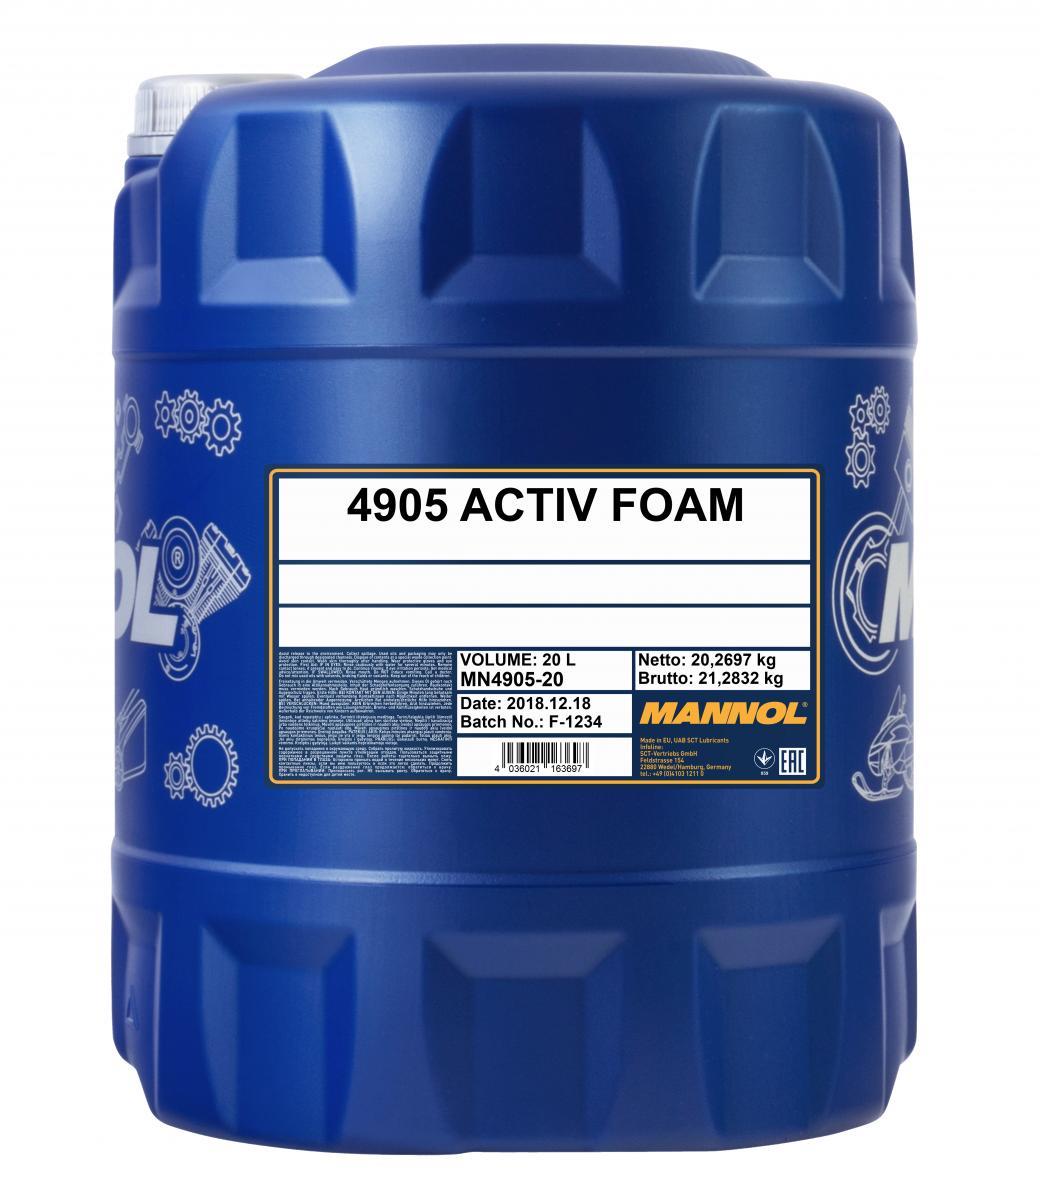 Mannol - 4905 Active Foam